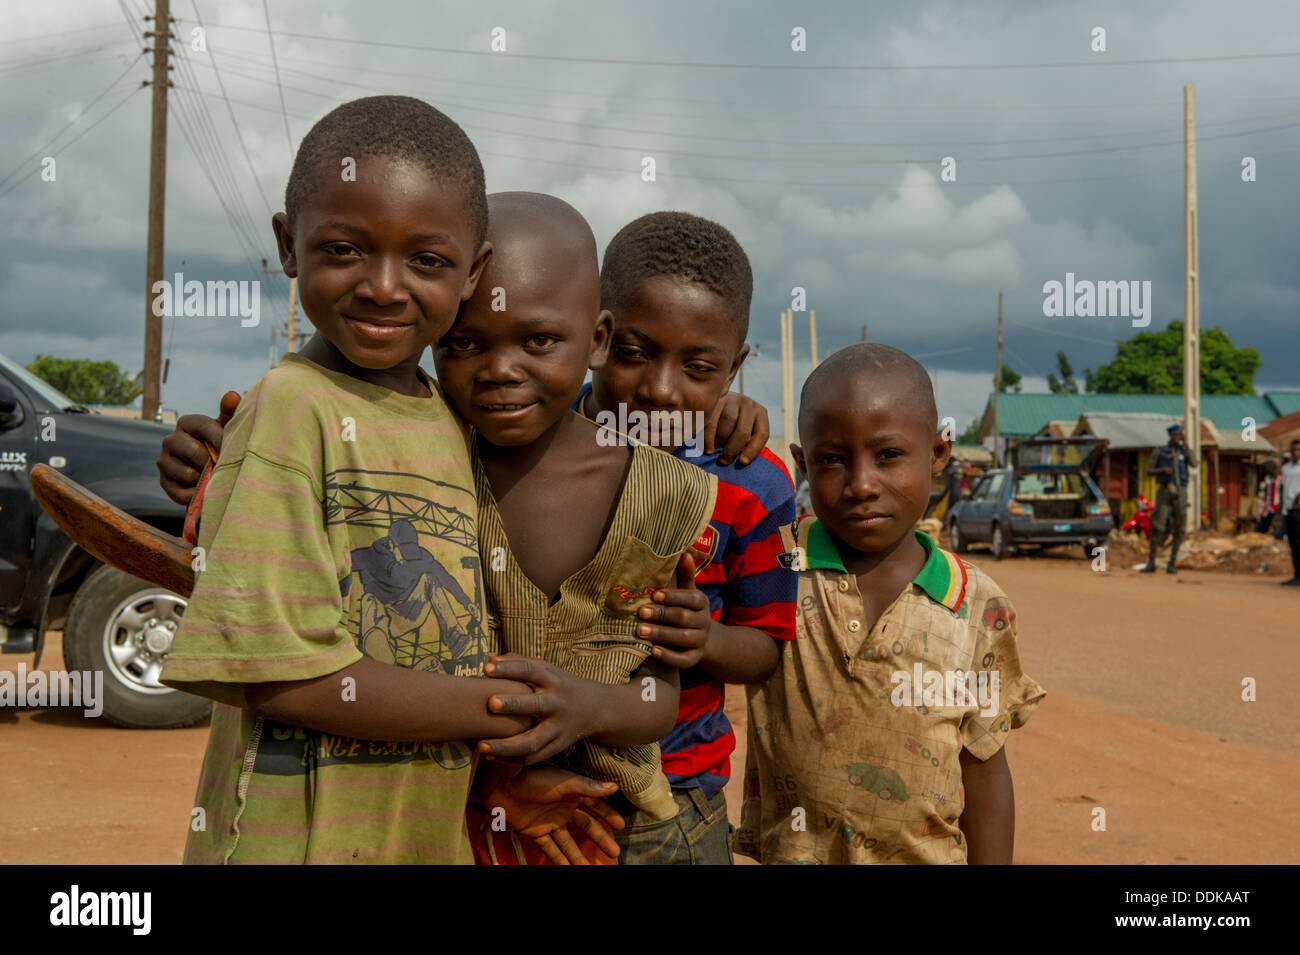 Les garçons d'Afrique noire dans une rue de Lokoja, Nigéria Banque D'Images